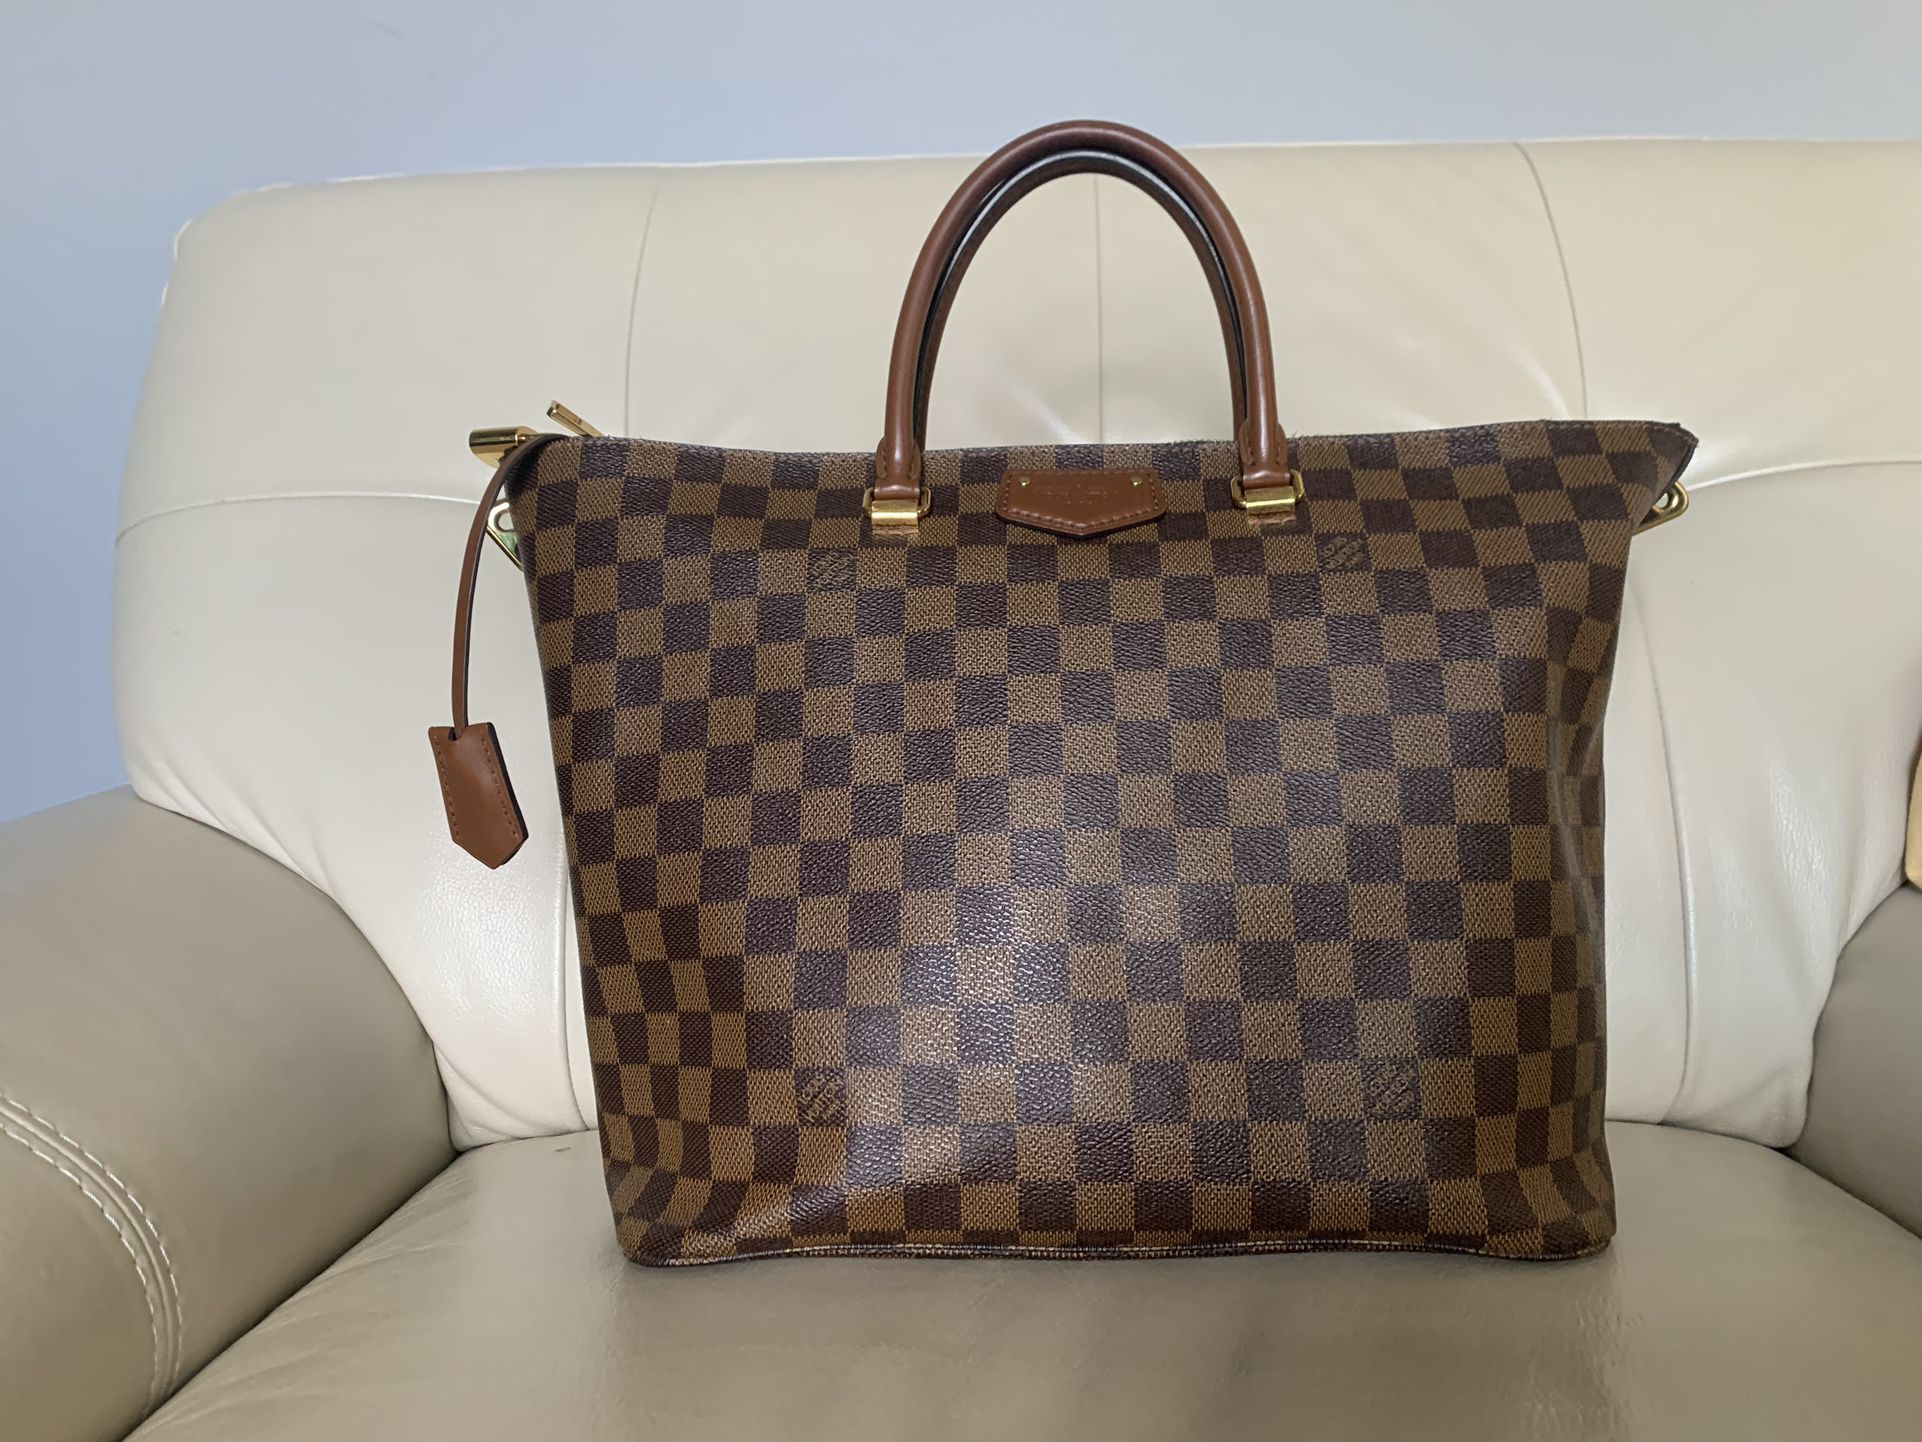 Louis Vuitton Belmont Damier Ebene Top Handle Bag on SALE